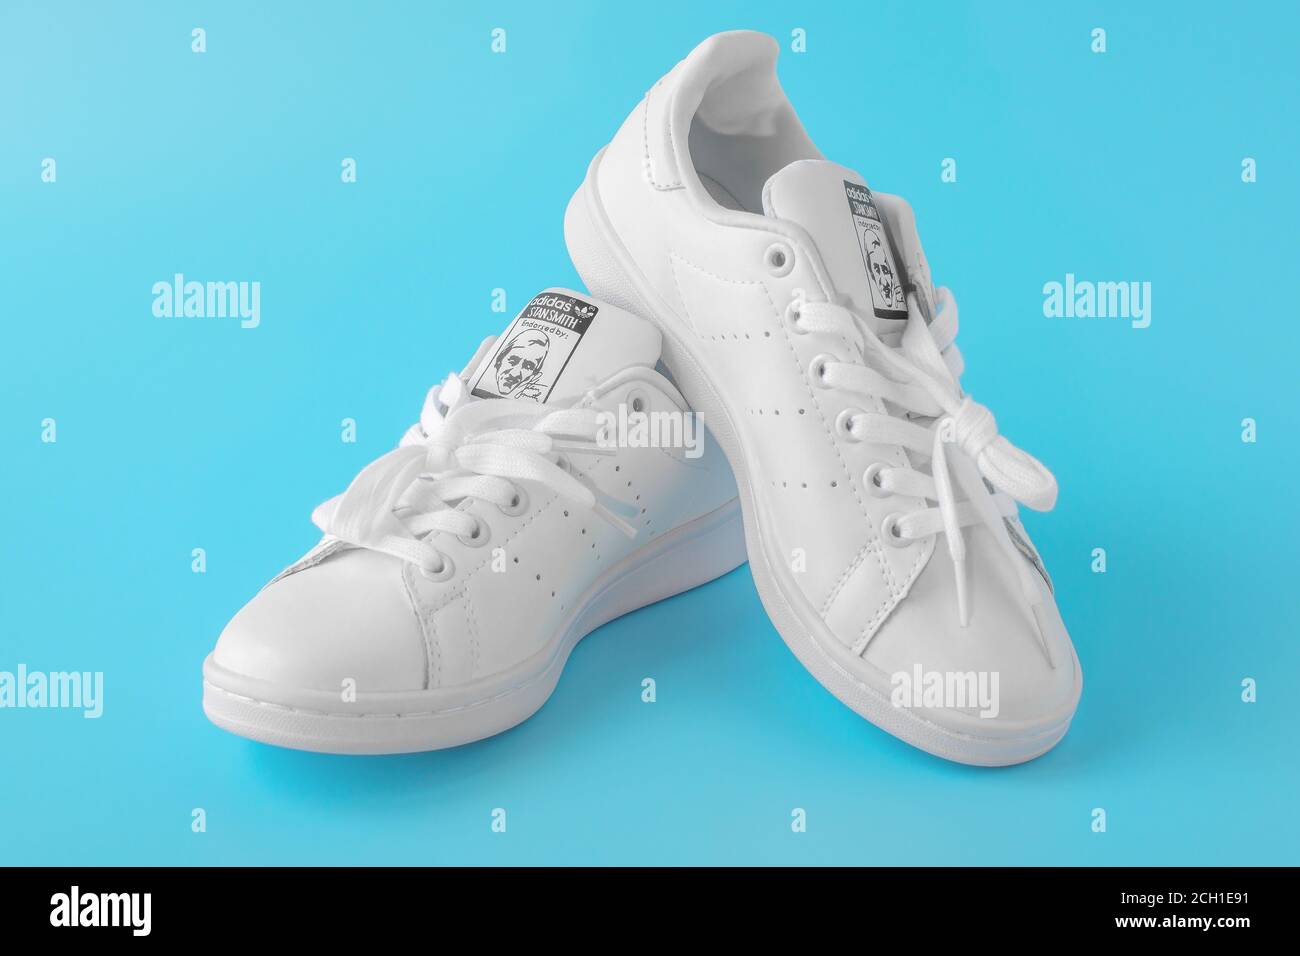 Mosca, Russia - 30 LUGLIO 2020: Scarpe bianche Adidas Stan Smith, Foto di  nuove sneakers bianche su sfondo blu. Adidas è un'azienda internazionale il  Foto stock - Alamy